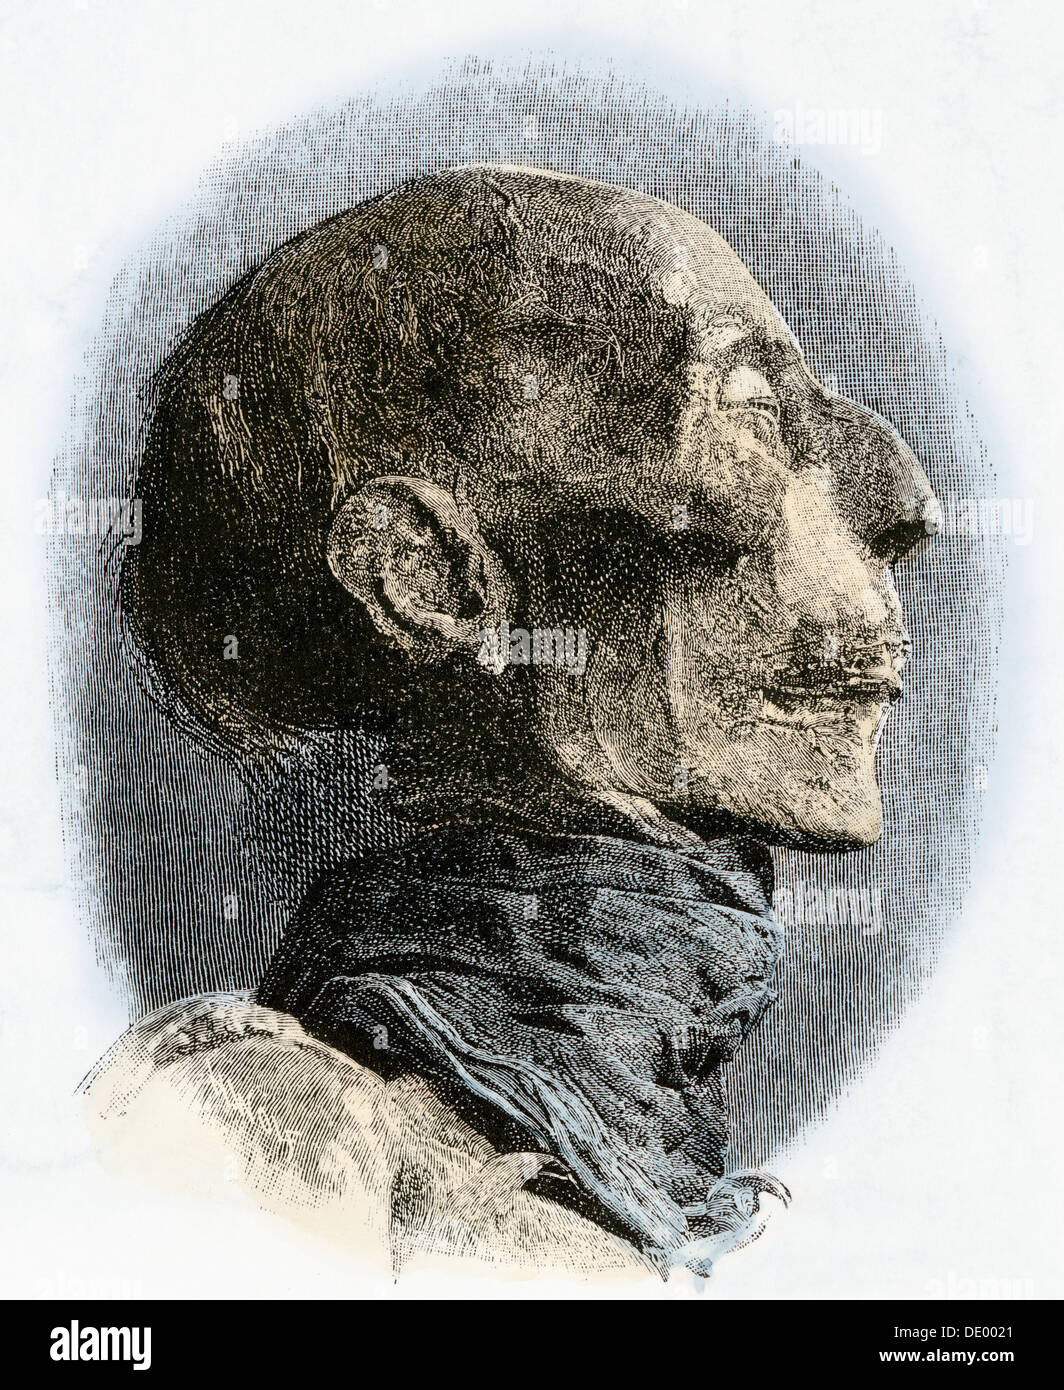 Perfil de Ramses II momia, excavado a finales de los 1800s. Xilografía coloreada a mano Foto de stock